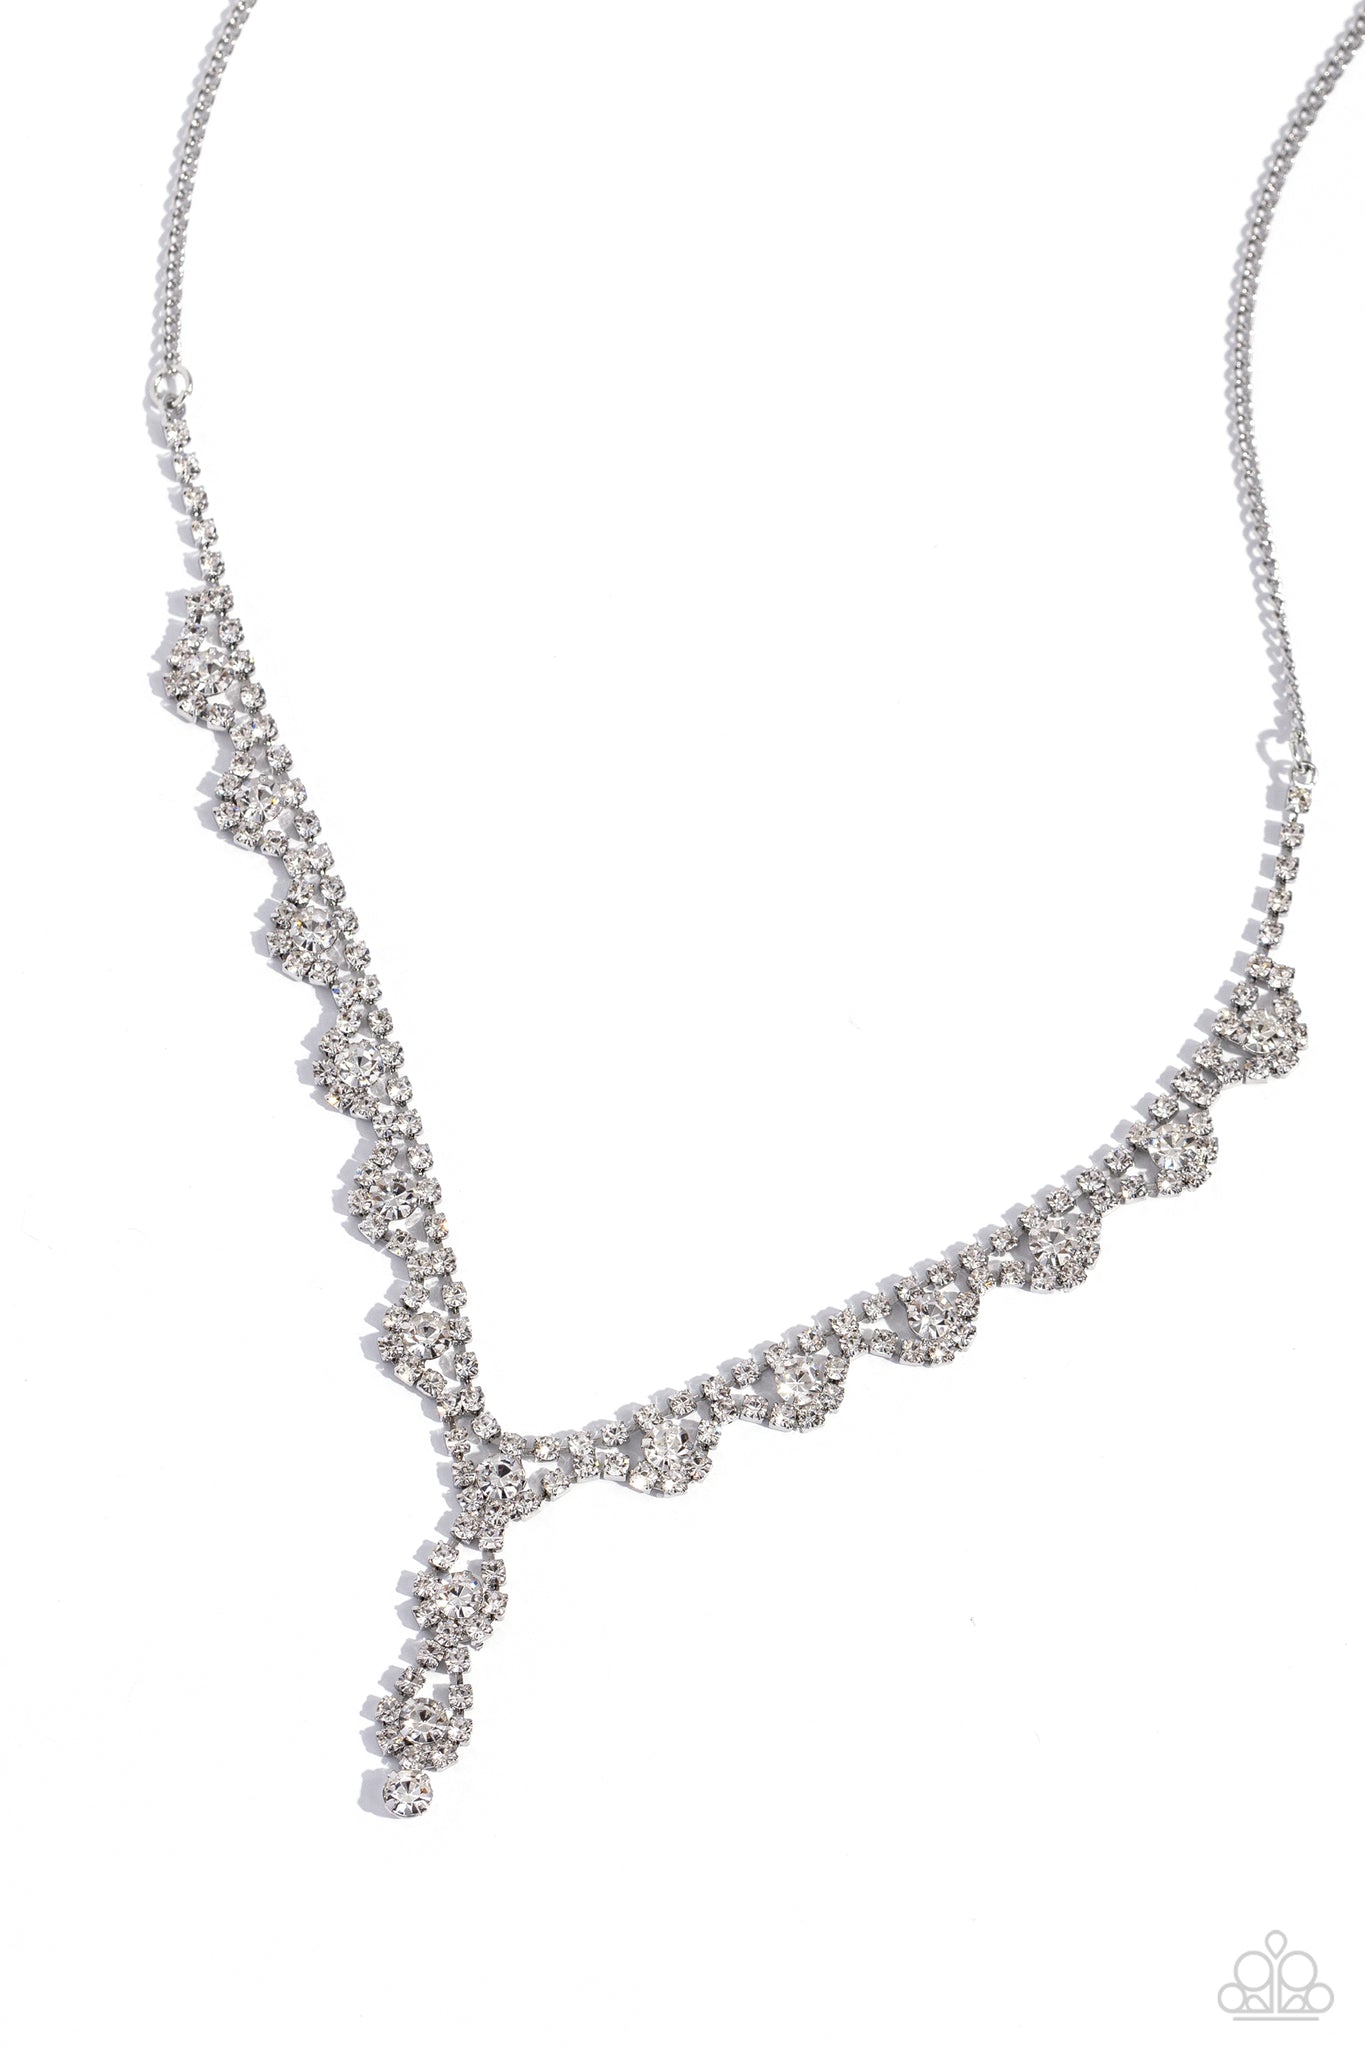 Paparazzi - Executive Embellishment - White Necklace